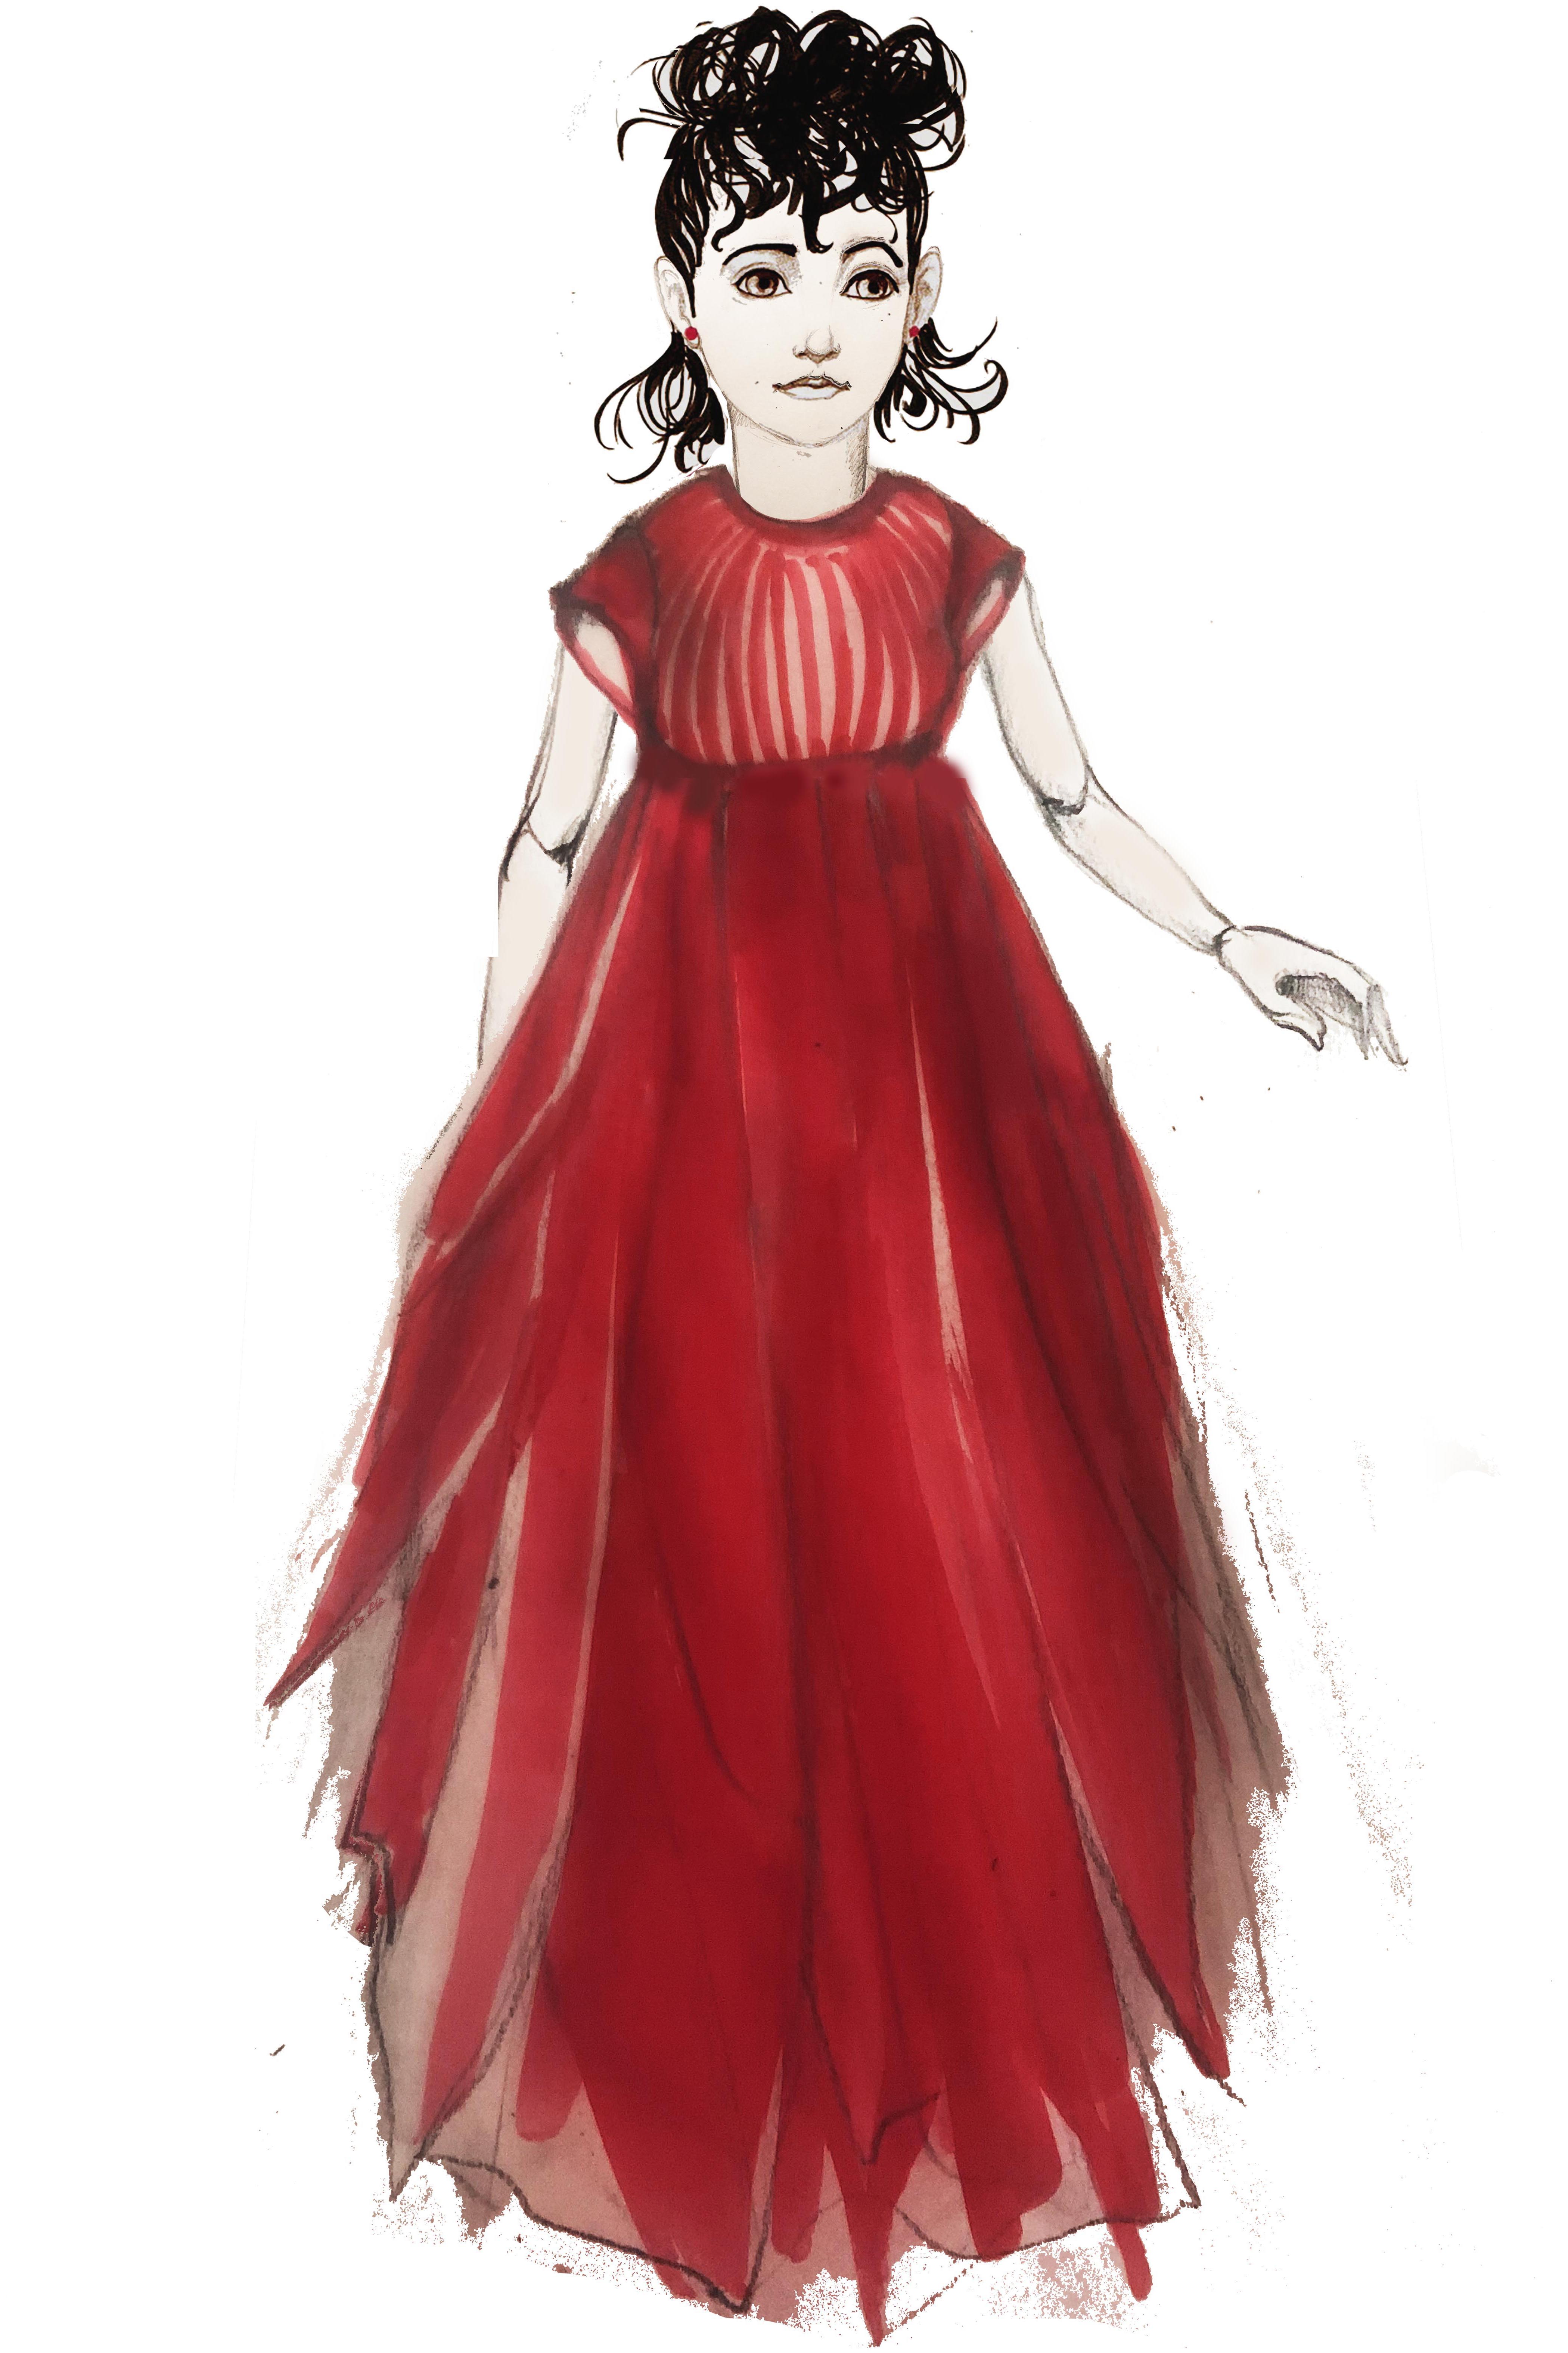 Dessin d'une petite danseuse portant une robe vaporeuse rouge. Elle est debout et plutôt statique. Seul son bras gauche est légèrement relevé.